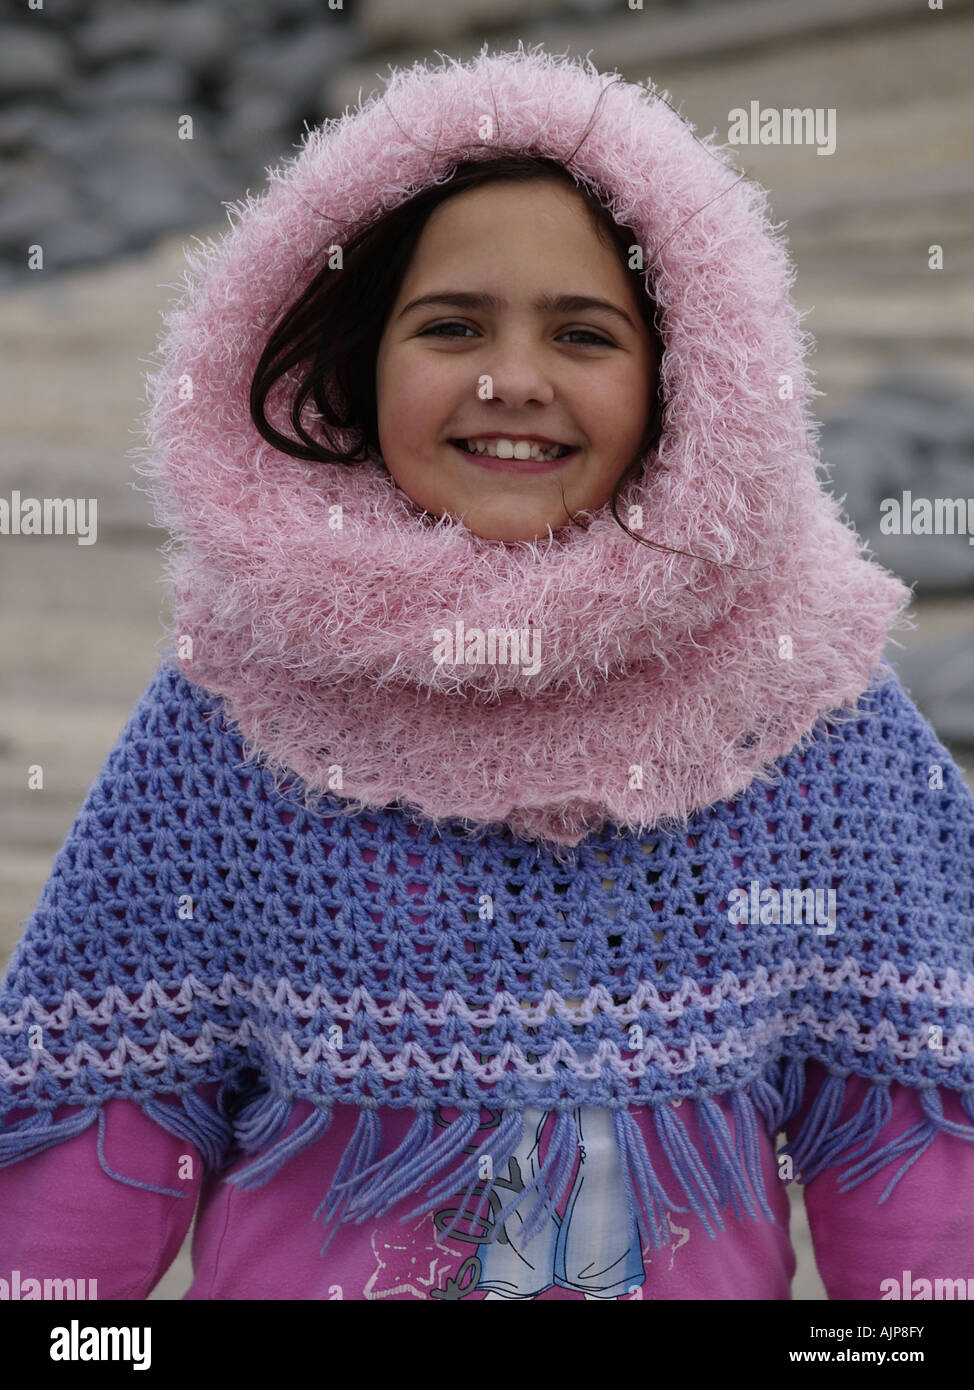 Una morena vestida de rosa bufanda tubo encima de su cabeza, woolly poncho y sonriente en la playa Fotografía de stock -